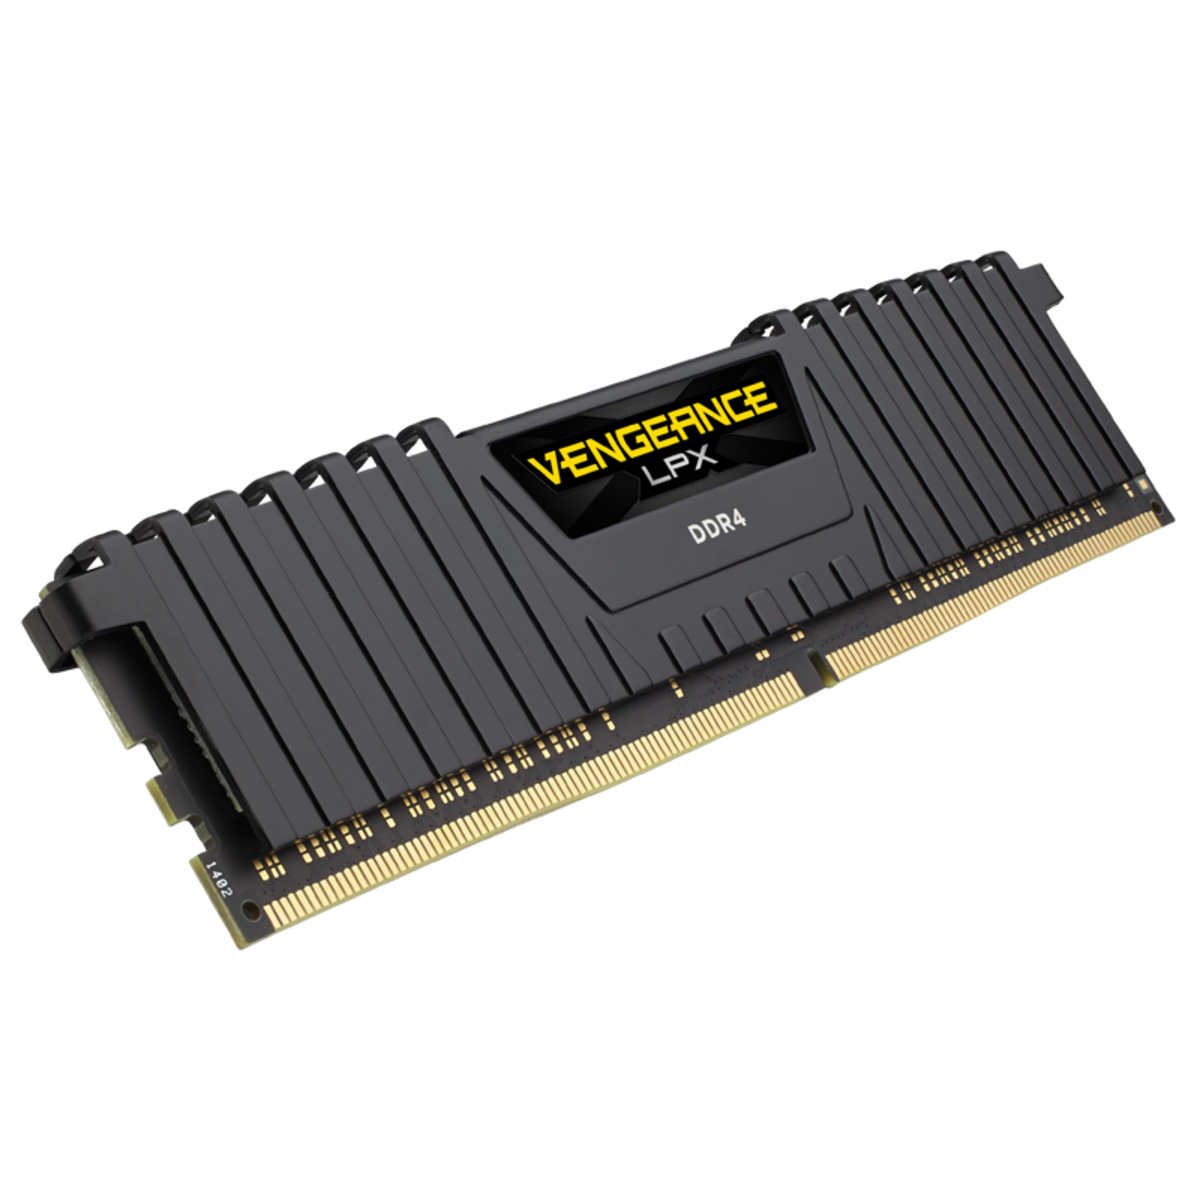 MEMORIA DDR4 CORSAIR VENGEANCE LPX 4GB 2400MHZ CMK4GX4M1A2400C16